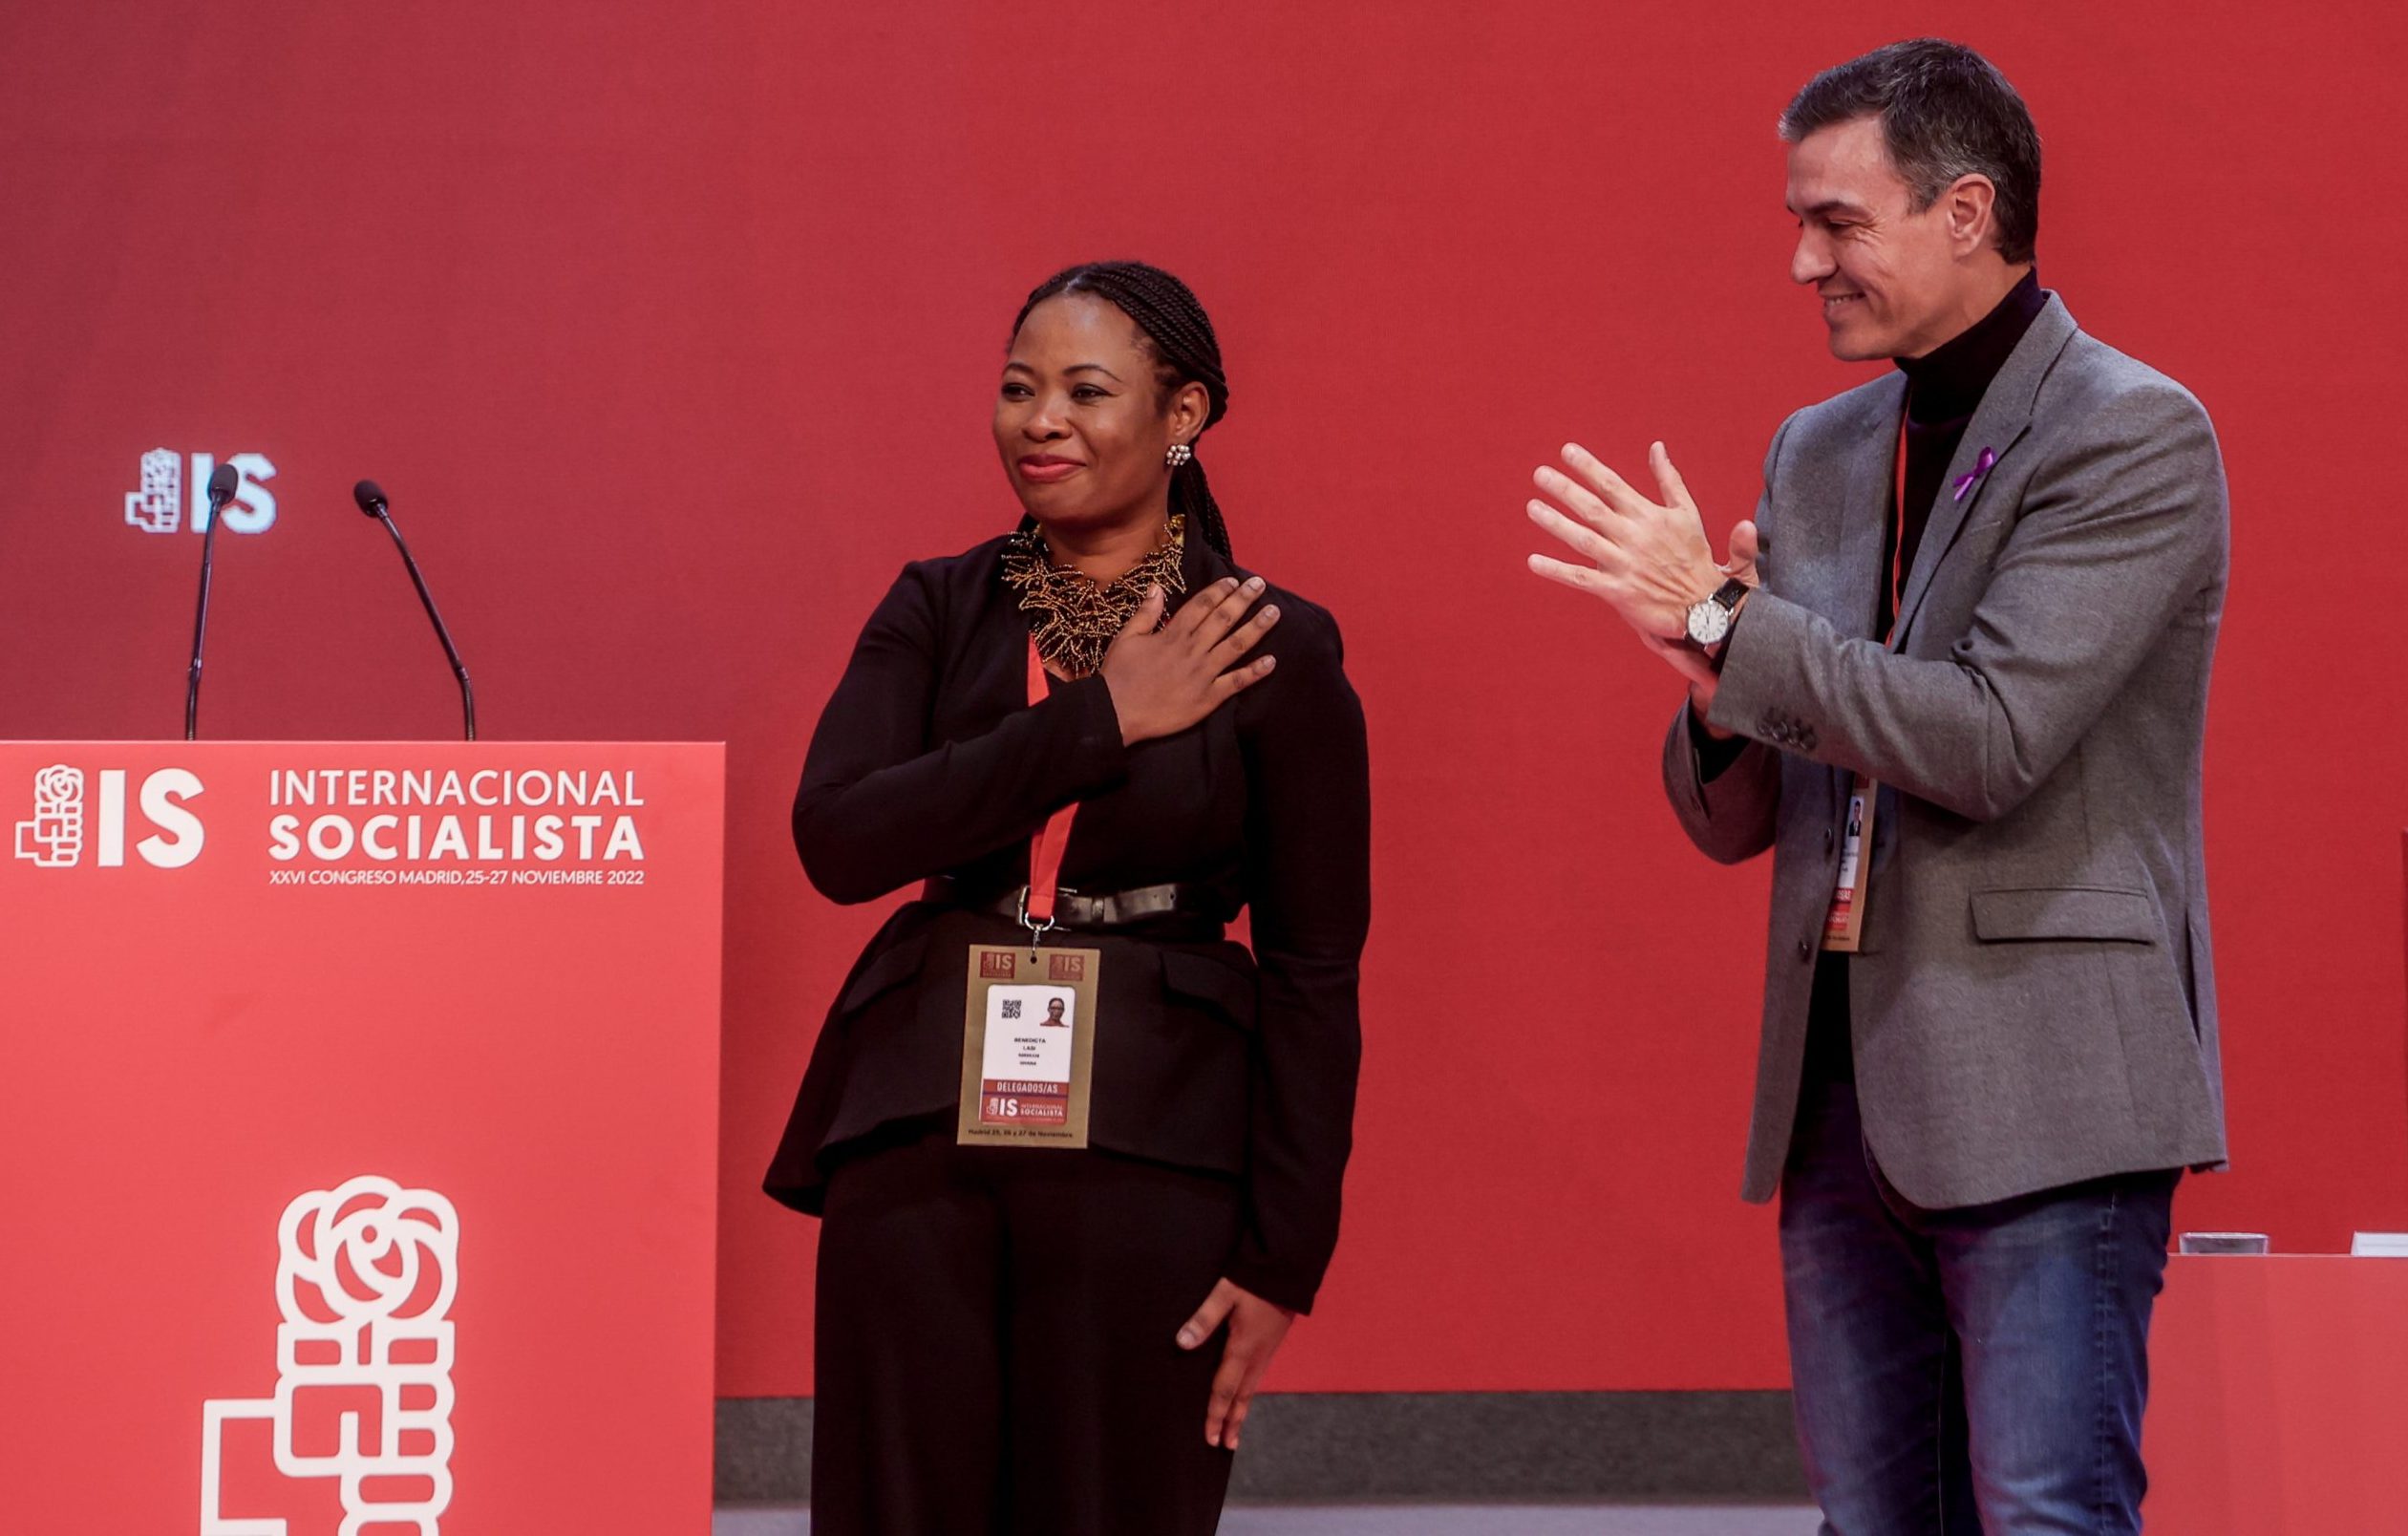 EXCLUSIVA: La número dos de la Internacional Socialista acusa a Pedro Sánchez de hostigamiento por razones de “raza y género”